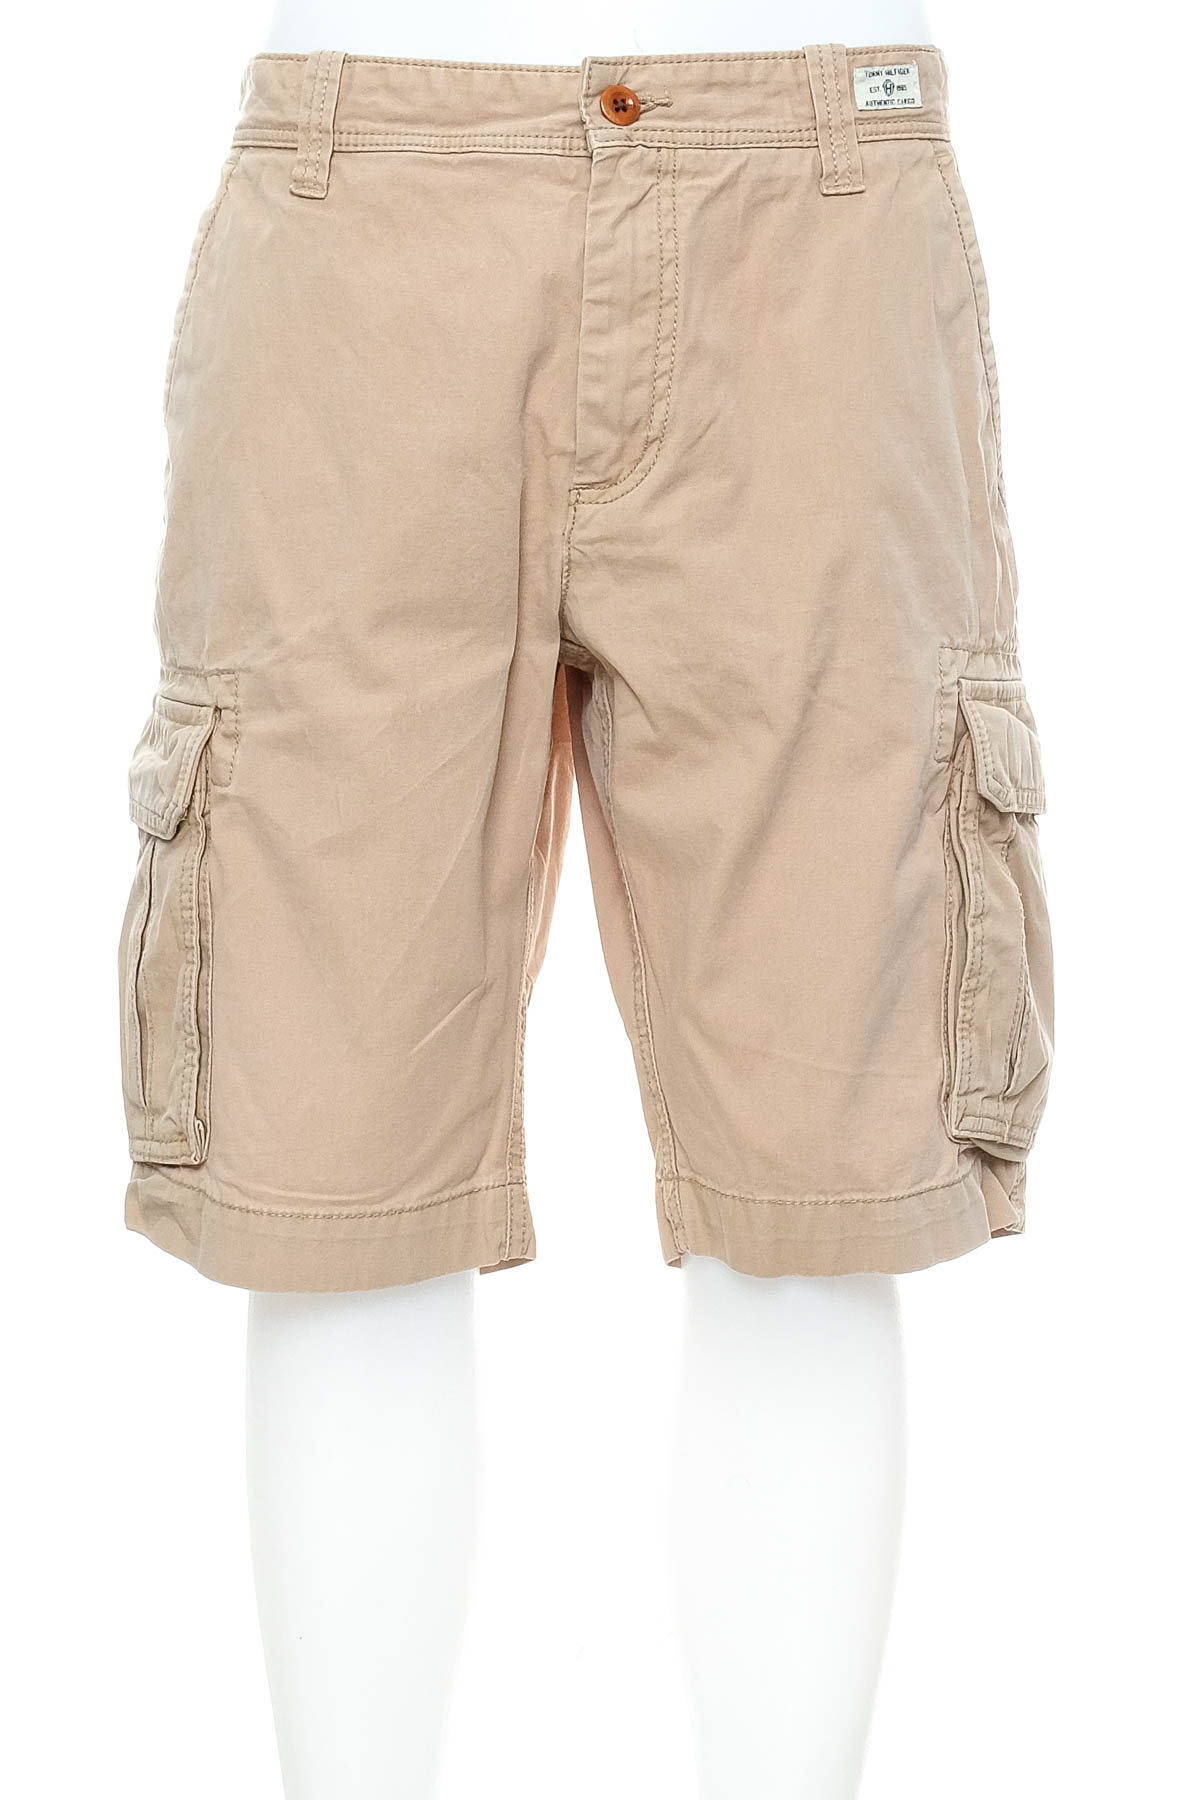 Men's shorts - TOMMY HILFIGER - 0